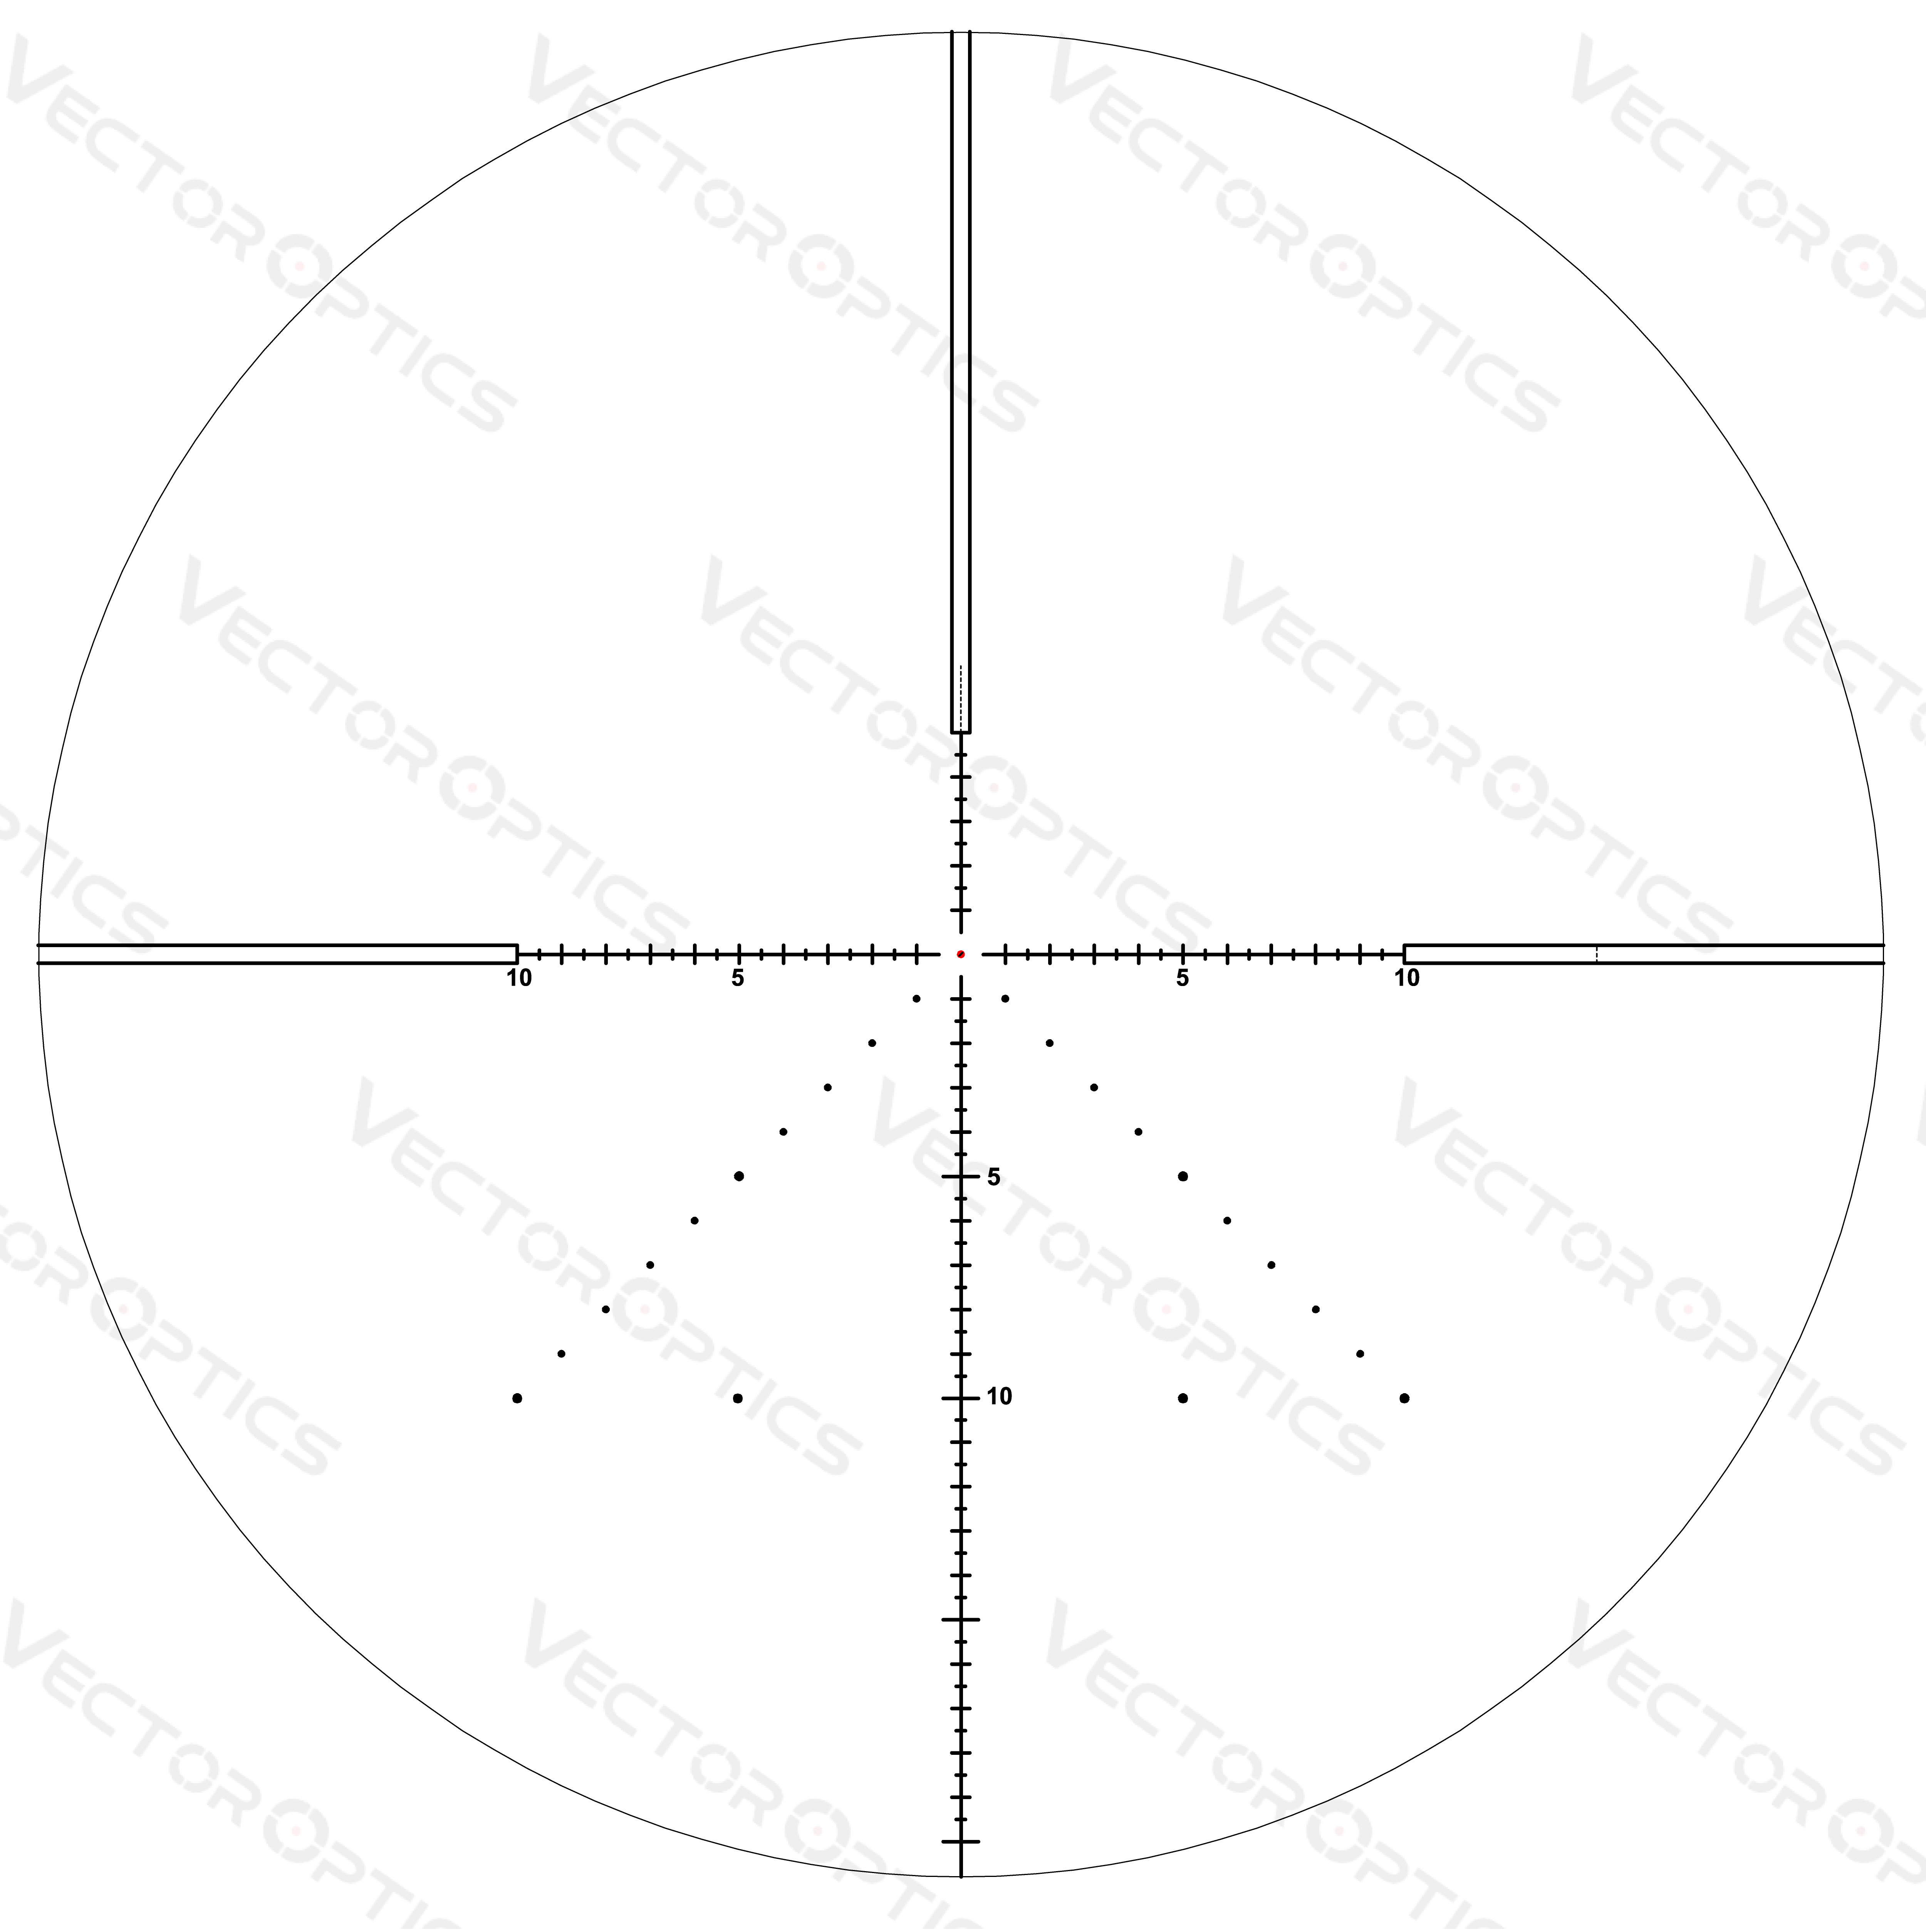 ベクターオプティクス Veyron 4-16x44 IR FFPライフルスコープ イルミネーション付き Vector Optics Veyron 4-16x44  IR First Focal Plane Riflescope Illuminated SCFF-38 TSUBOMI